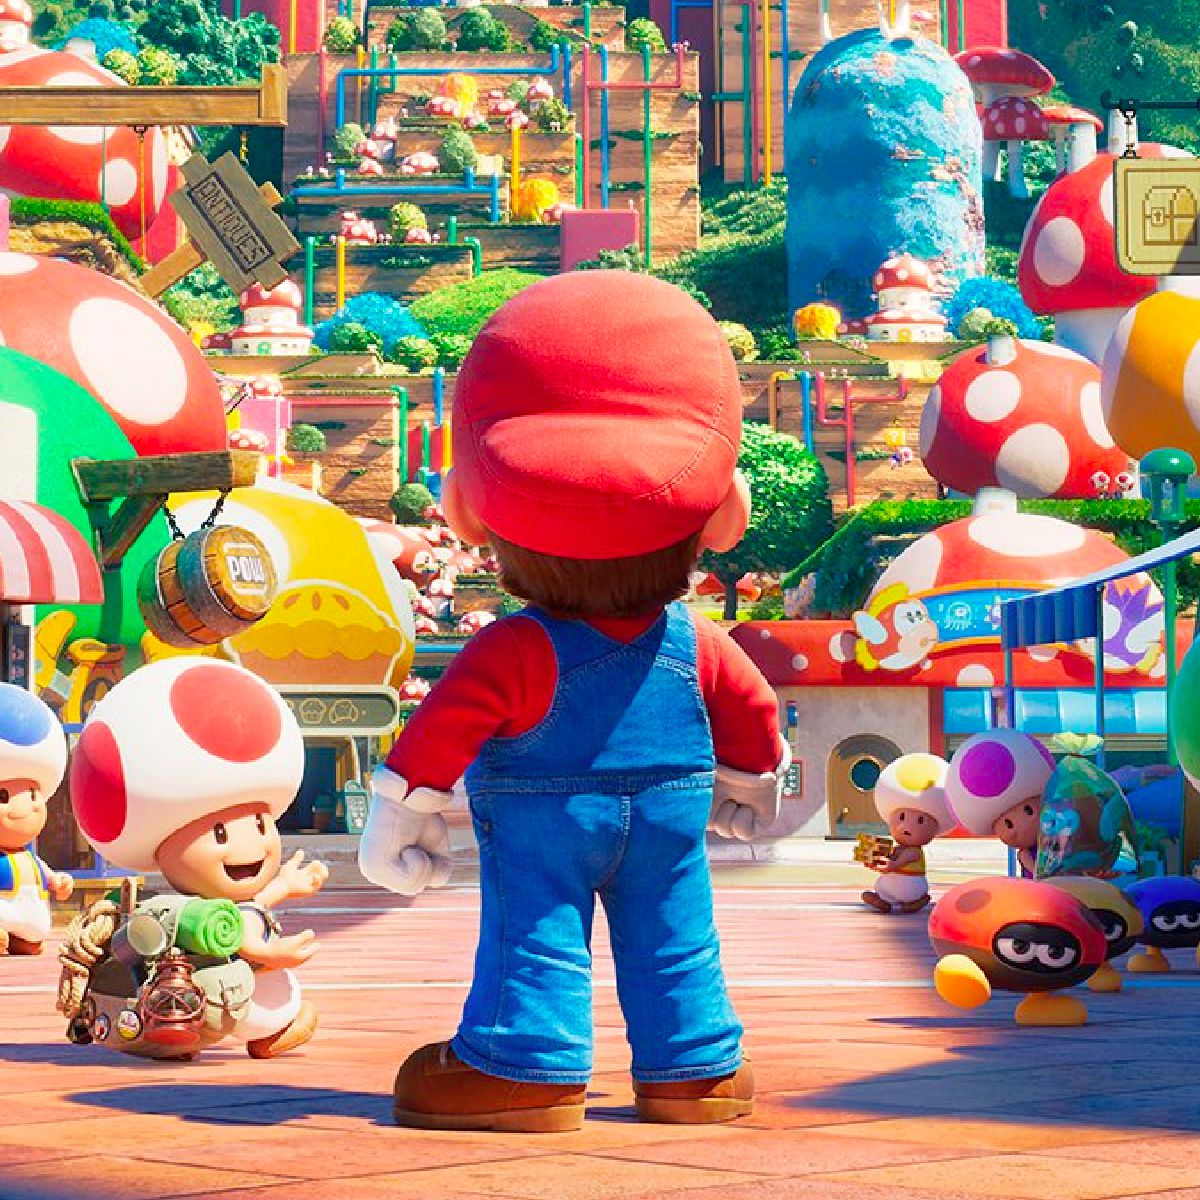 La schiena di Mario mentre si trova in un'affollata via commerciale popolata da Toads nel Regno dei Funghi